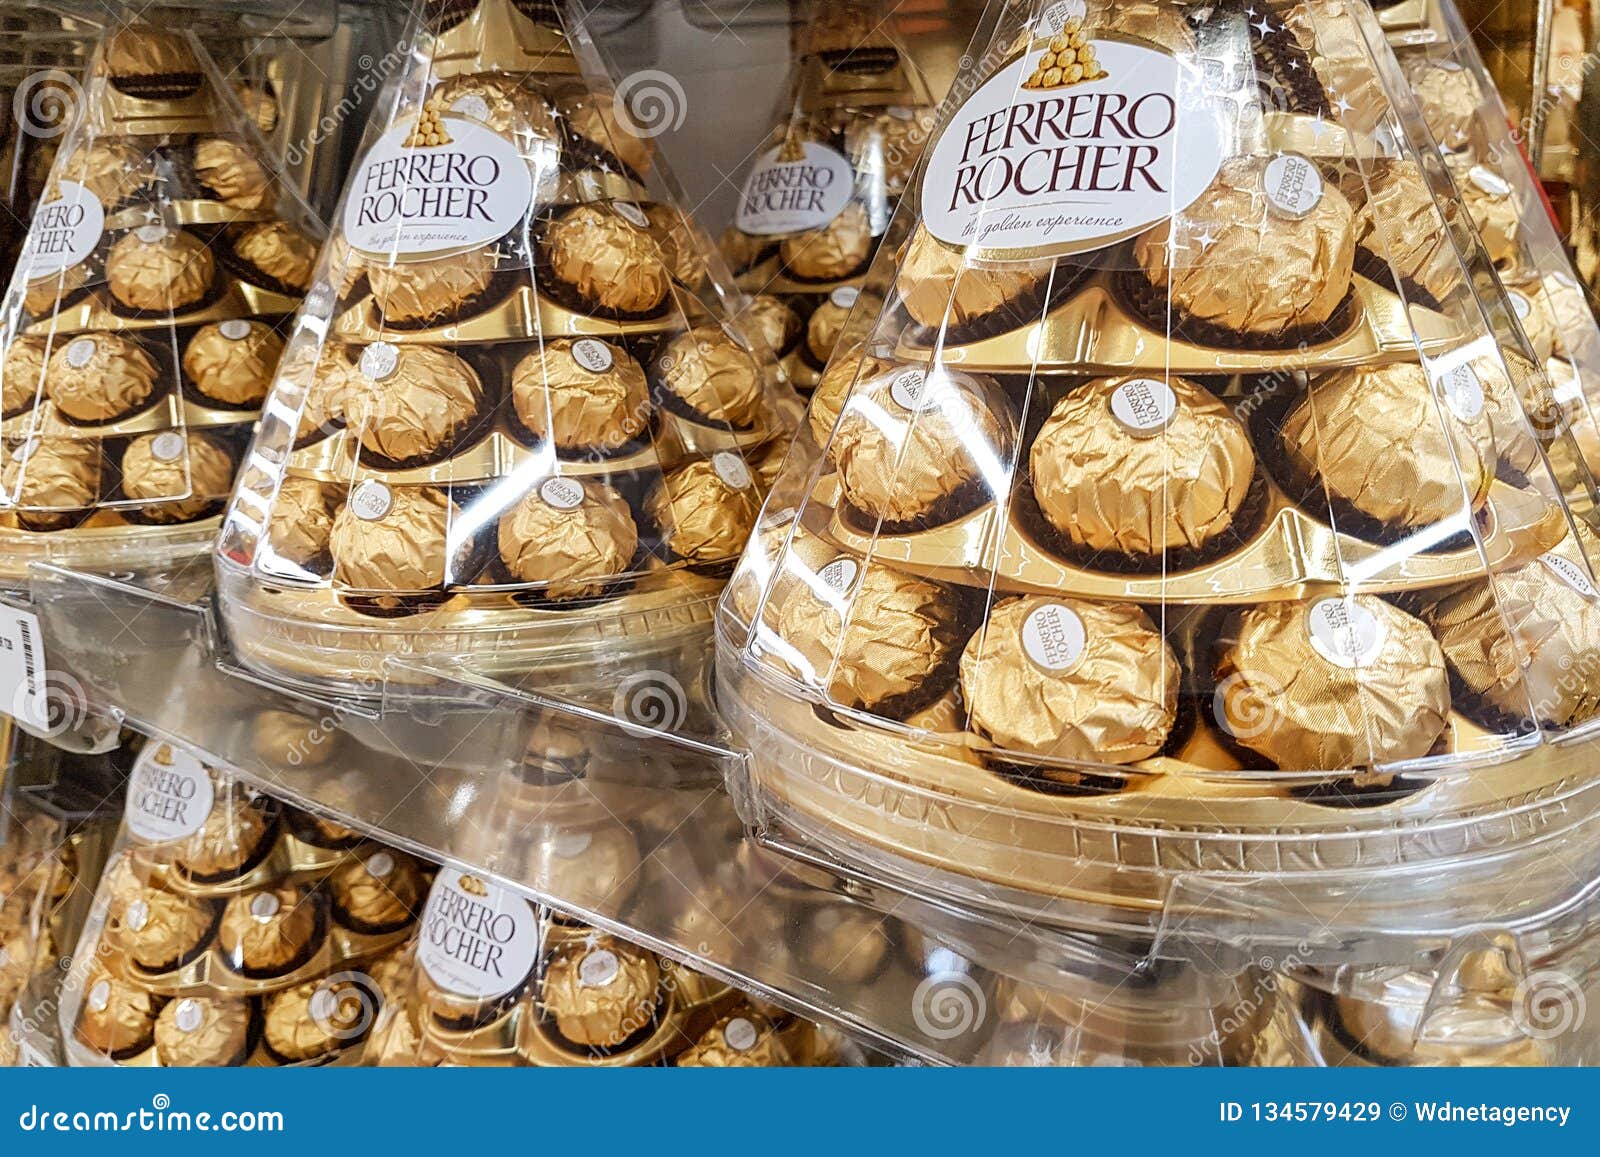 Chocolats De Ferrero Rocher Image stock éditorial - Image du dessert,  marché: 134579429